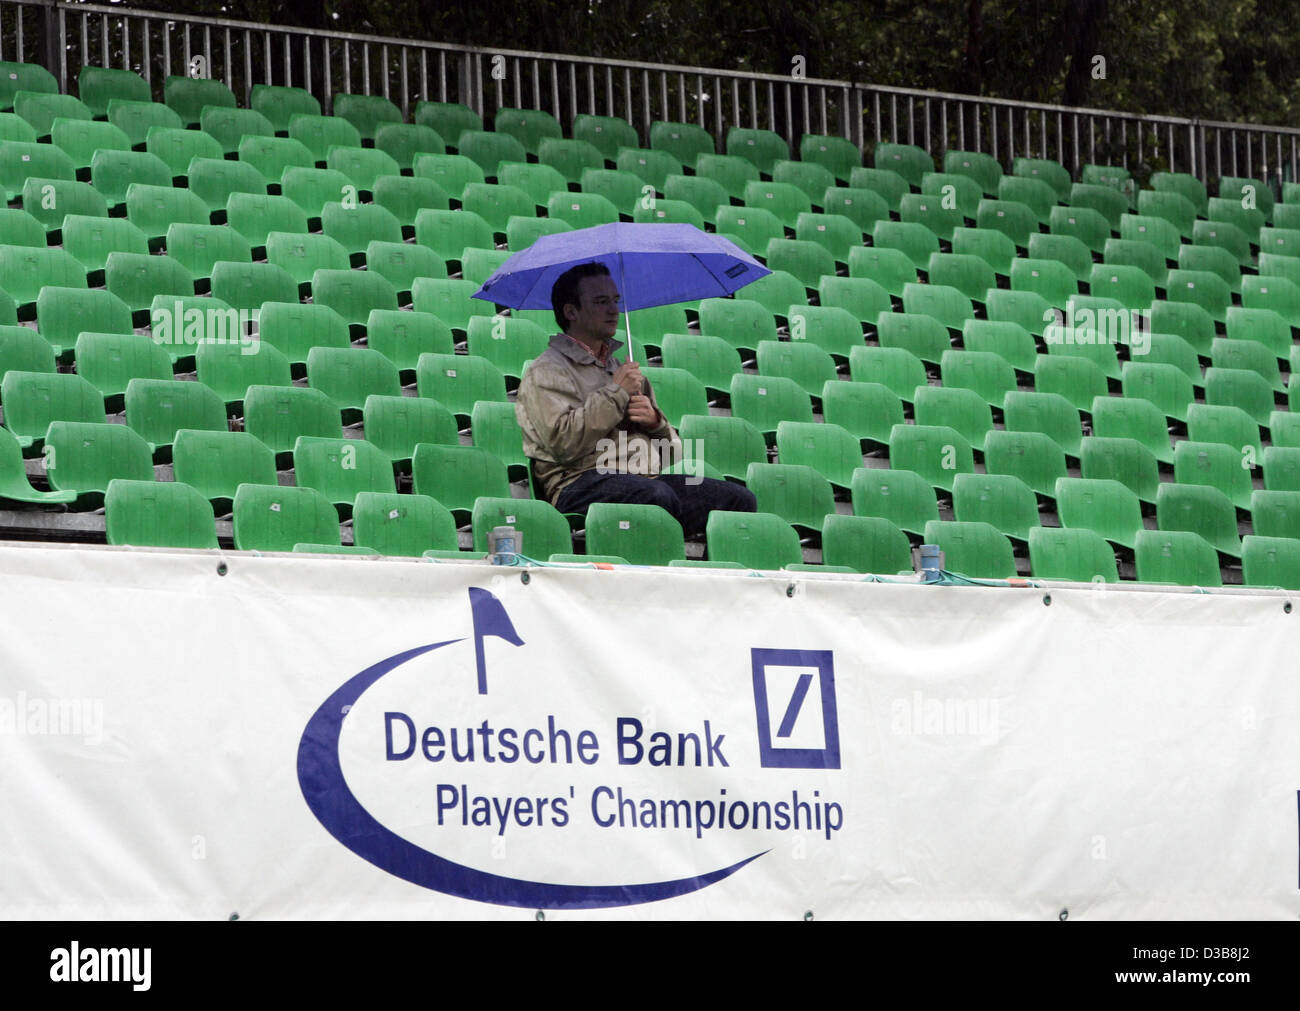 (Dpa) - un fan del Golf espera el inicio de la "Deutsche Bank jugadores Campeonato de Europa 2005" en la lluvia torrencial en Alveslohe (Alemania), el jueves 21 de julio de 2005. El inicio se retrasó seis horas debido a las intensas lluvias caídas. El torneo se lleva a cabo hasta el 24 de julio de 2005 en la mansión "Gut Kaden". Con un Foto de stock